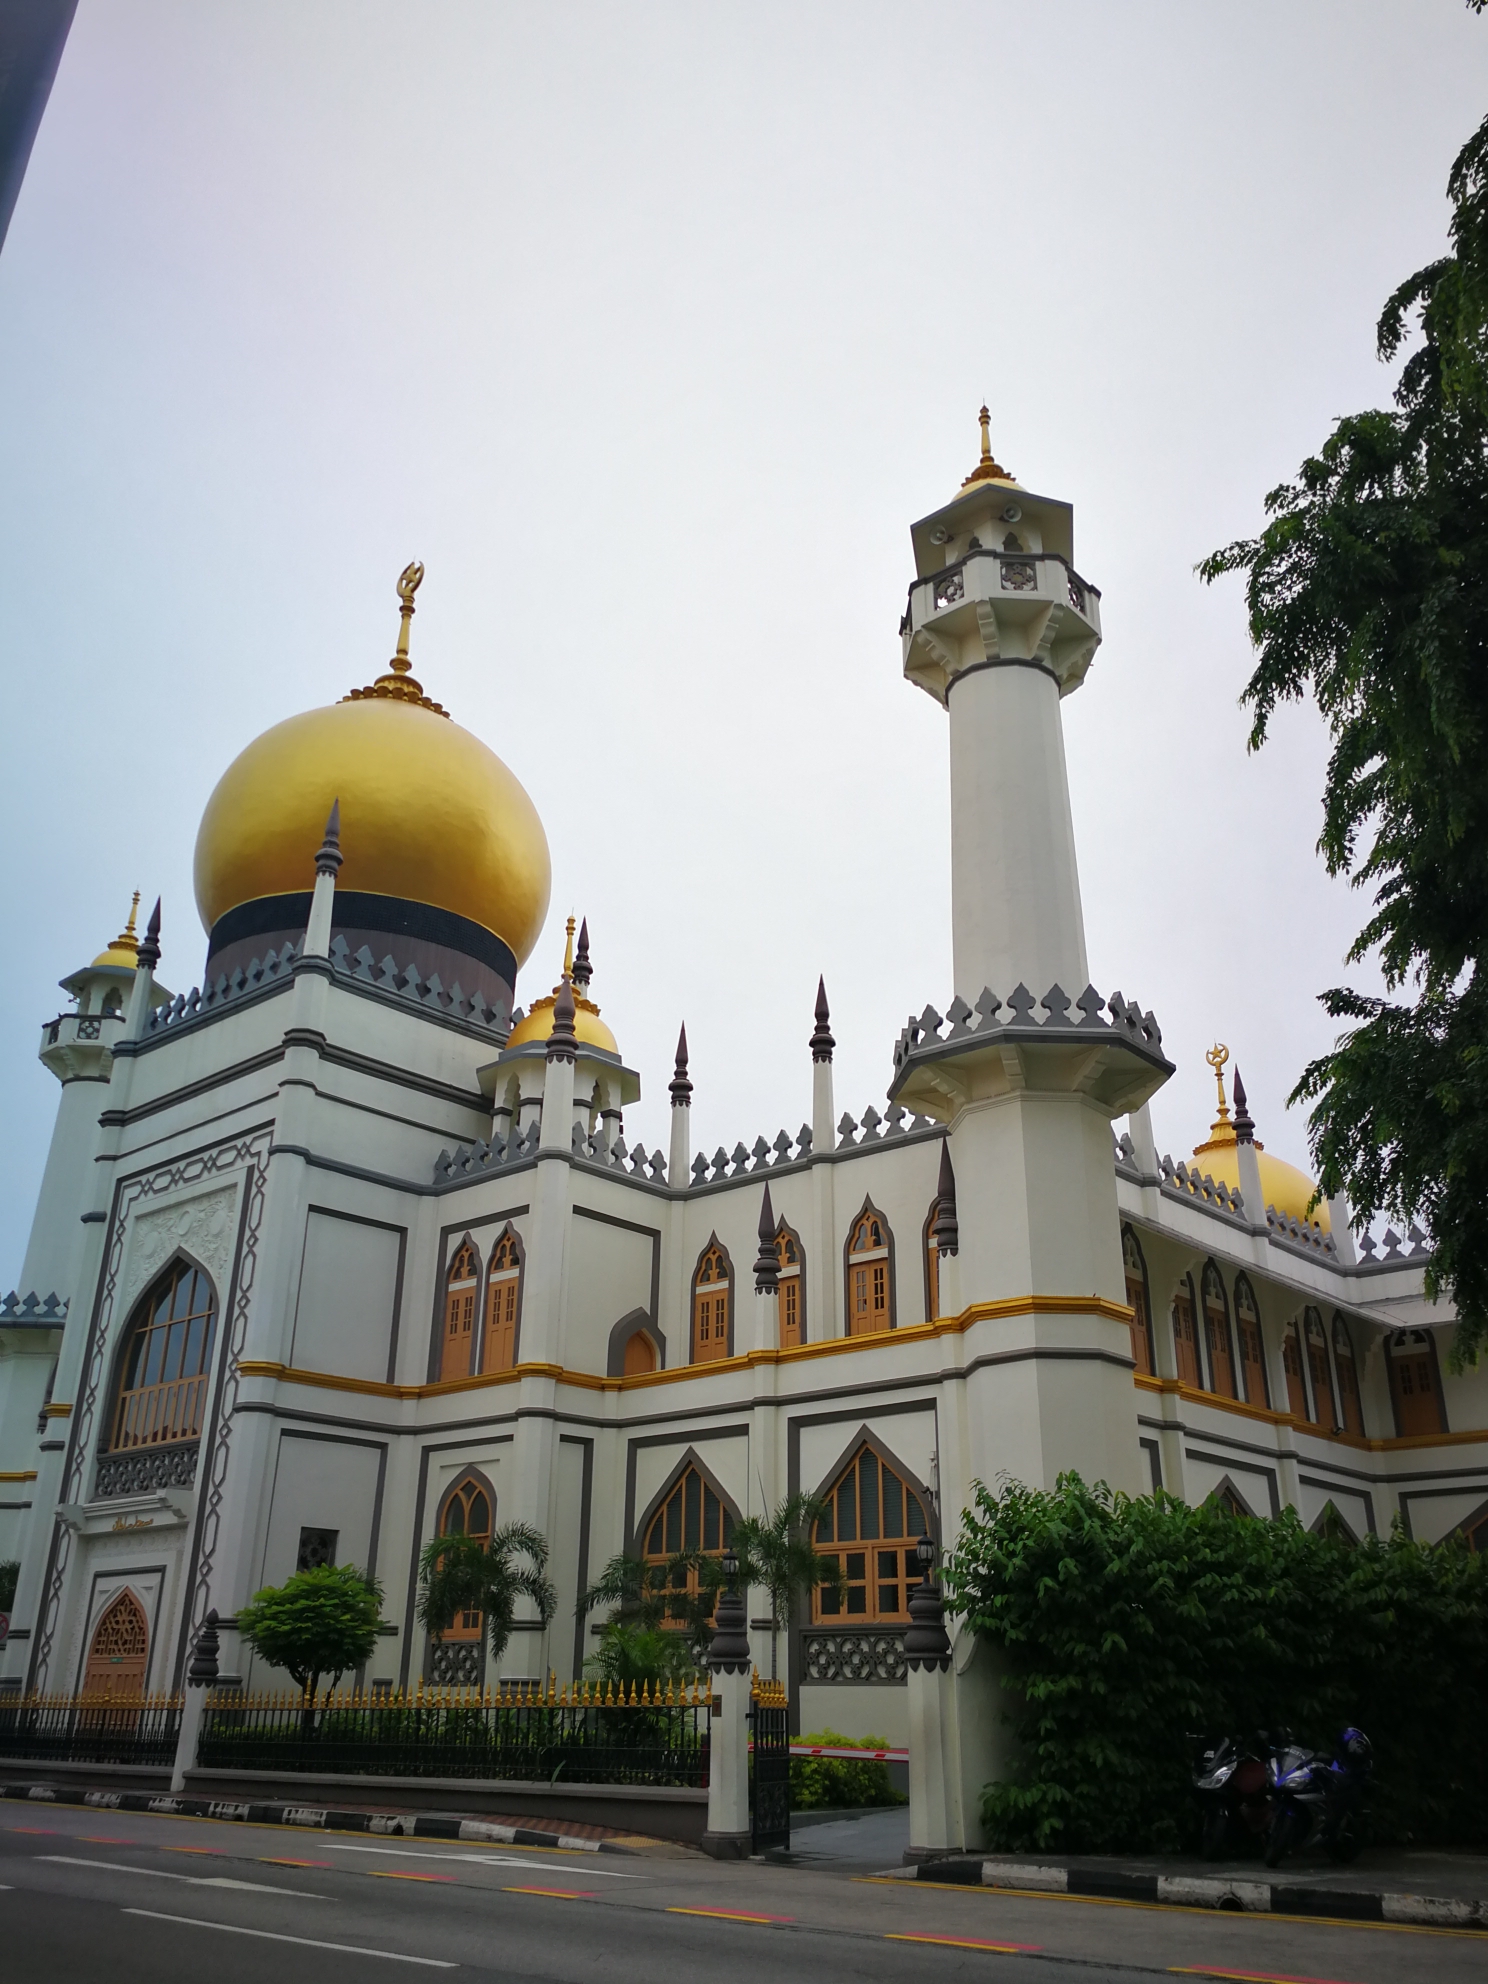 苏丹回教堂(masjid sultan)位于新加坡甘榜格南区的马斯喀特街与桥北